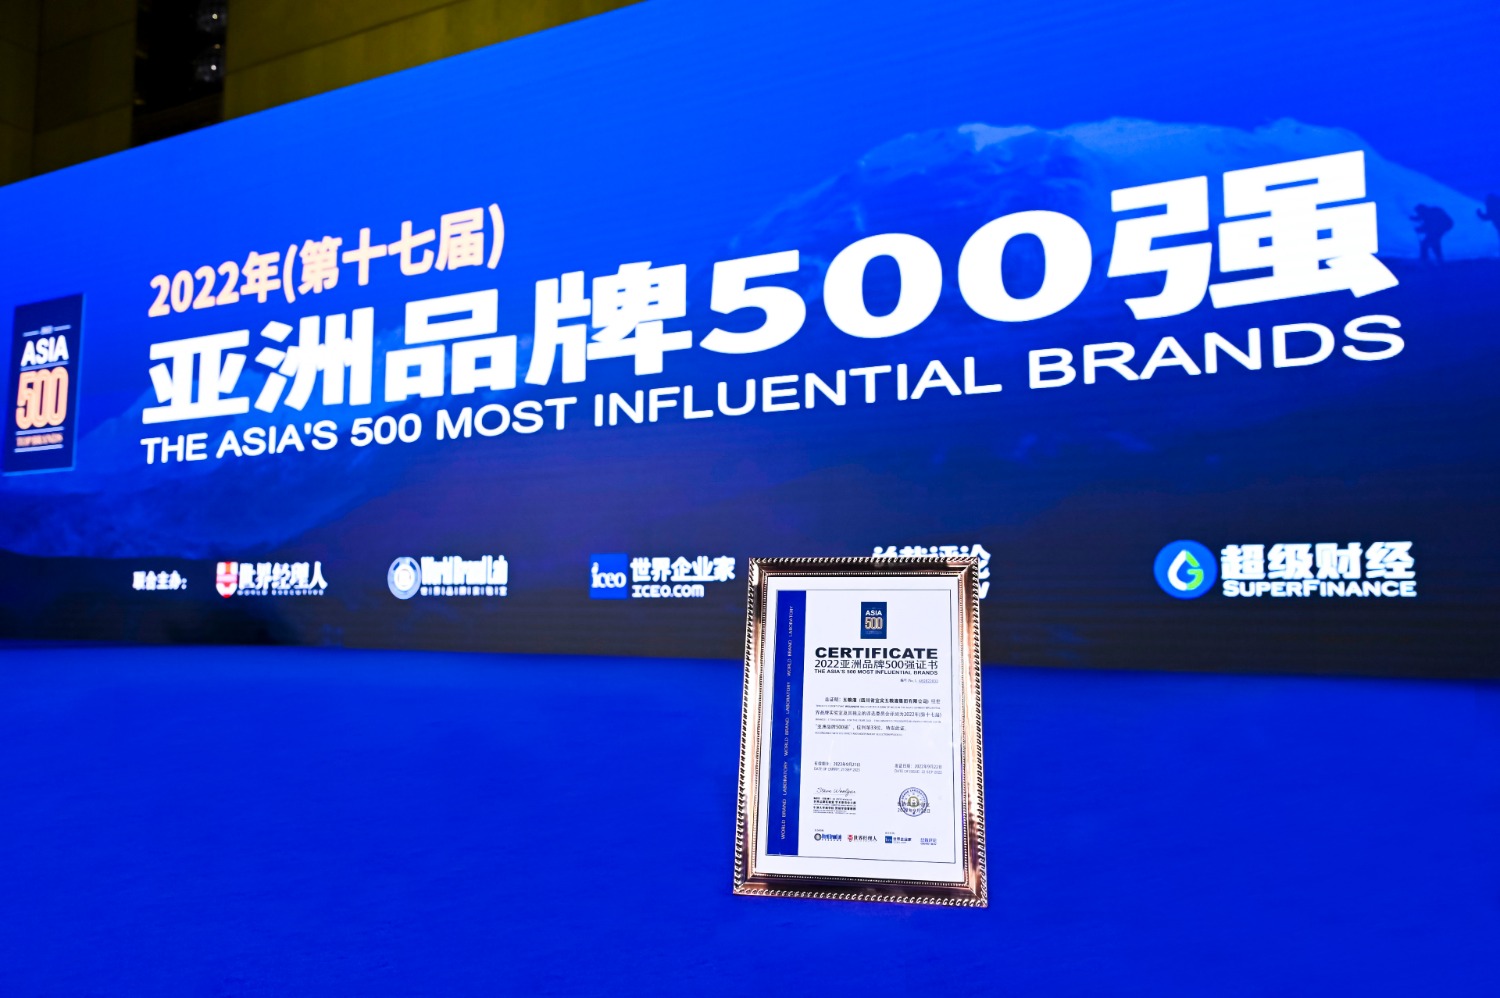 中国7家酒企入选亚洲品牌500强、metal盲盒获3000万元融资...本期11条男性消费热点